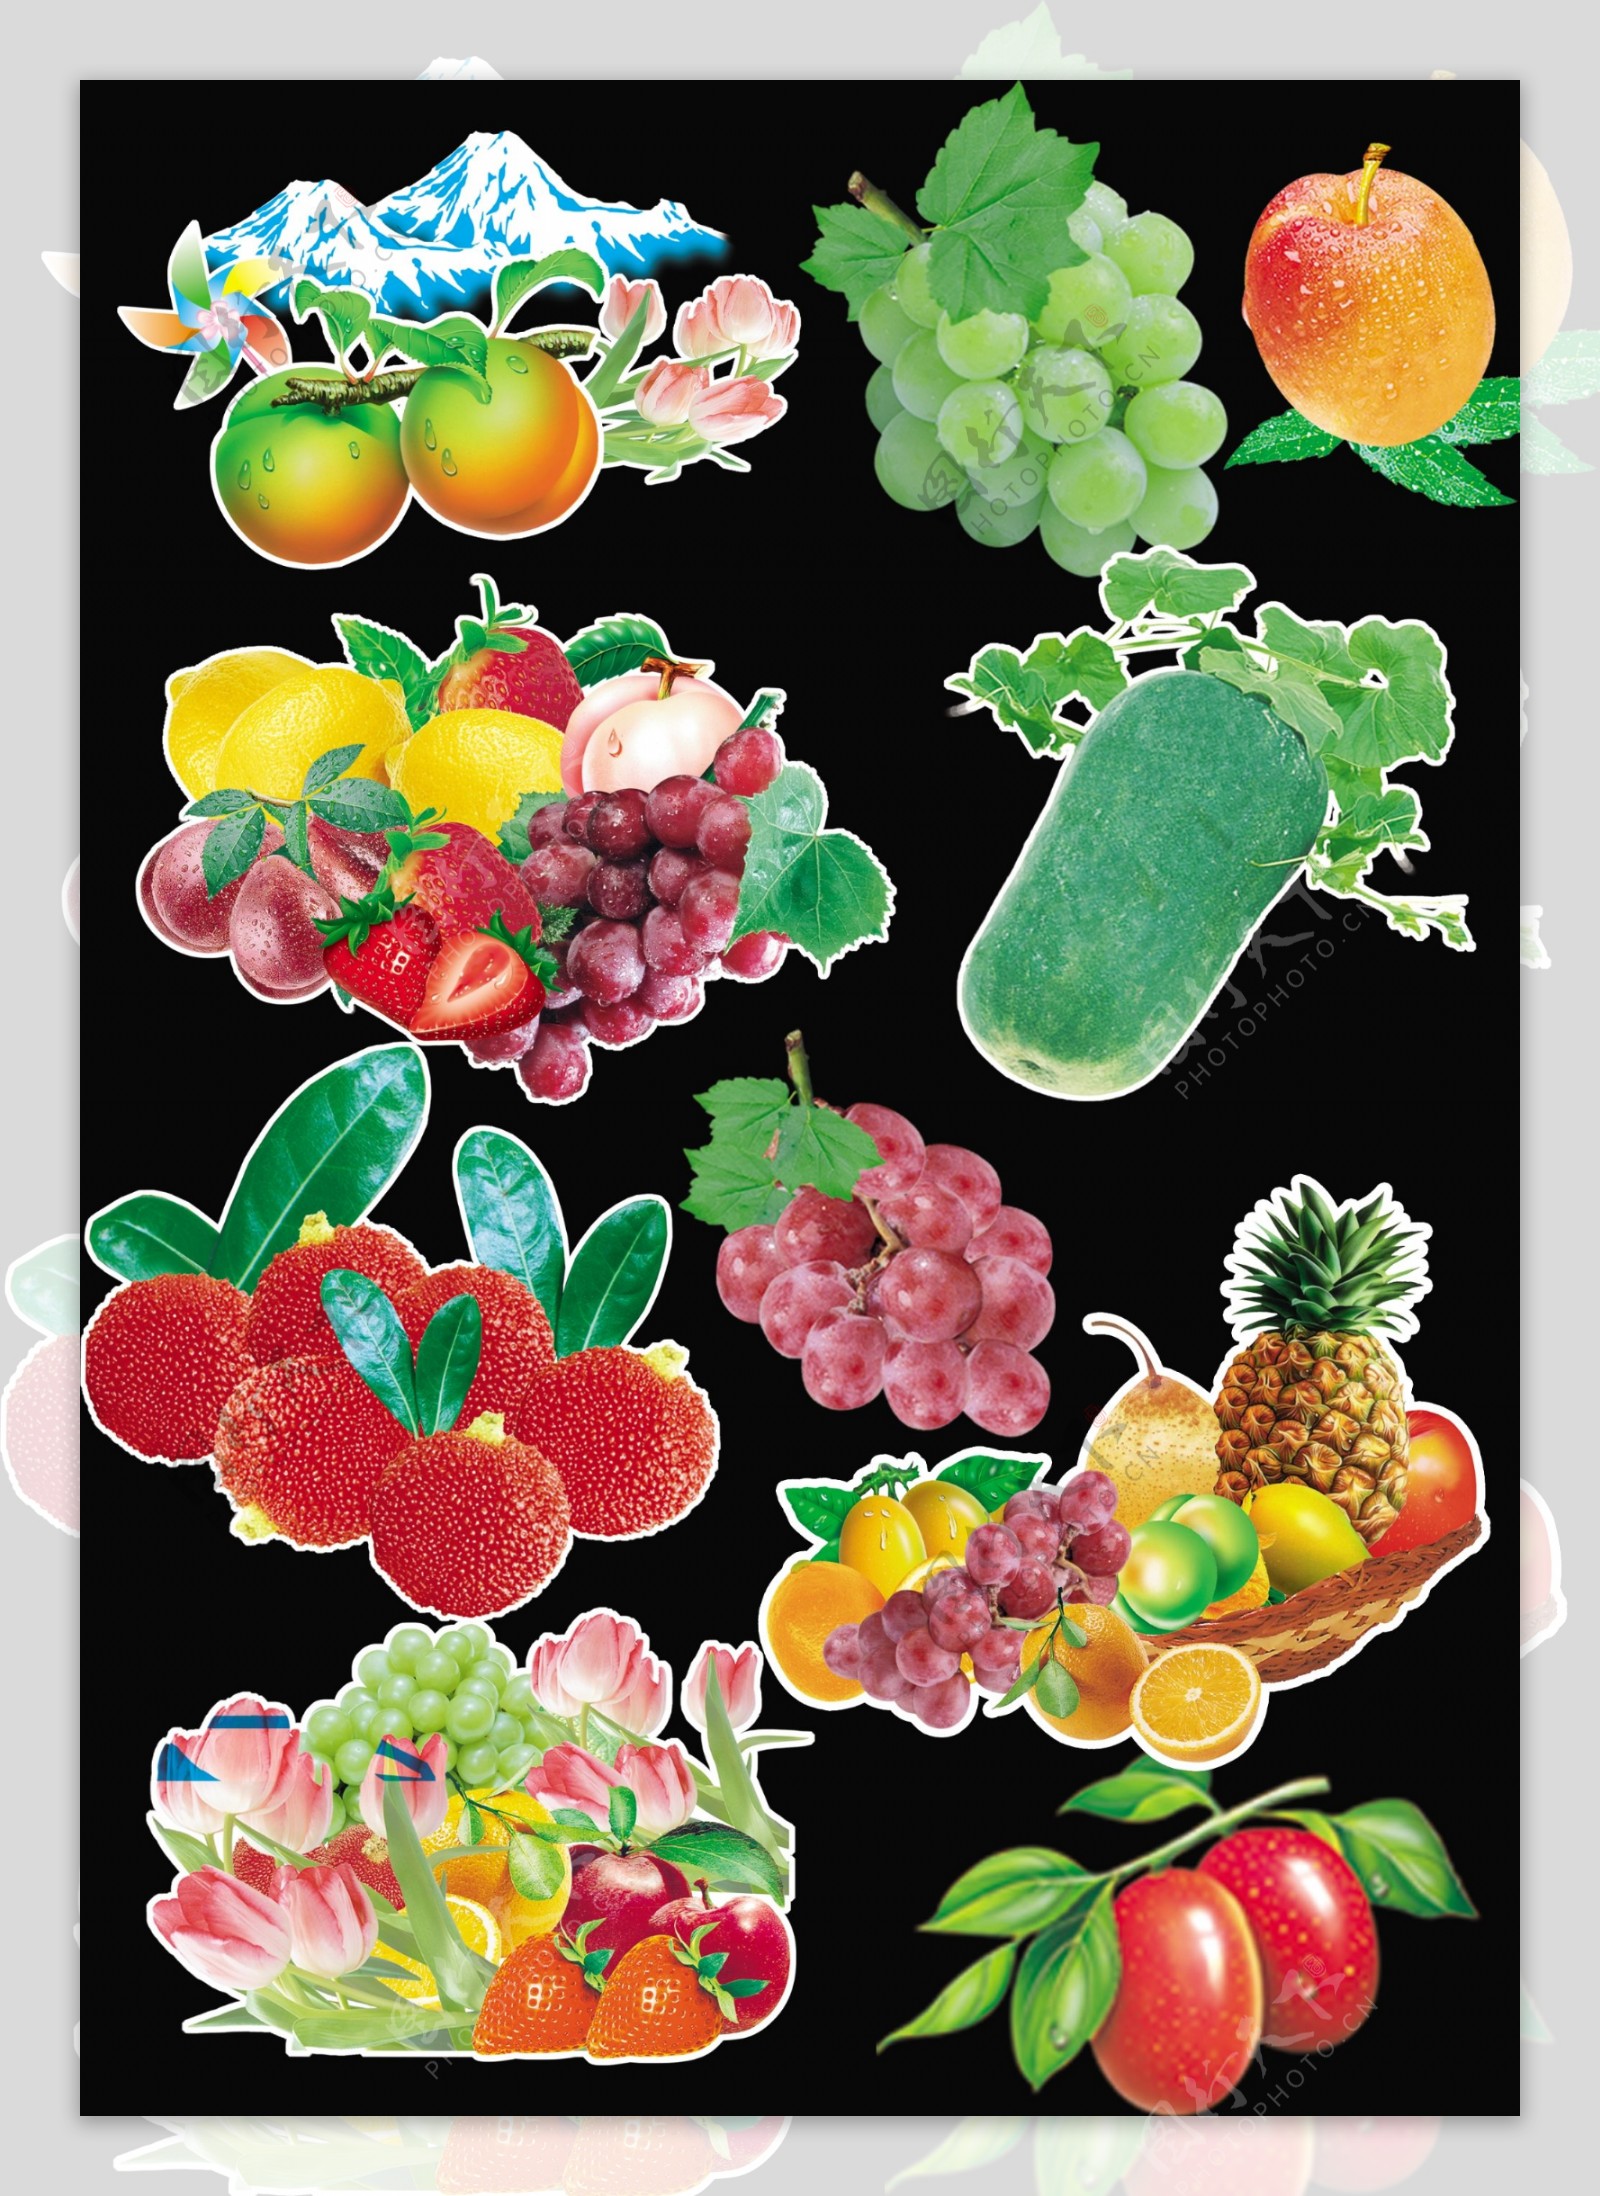 好用的水果堆图片